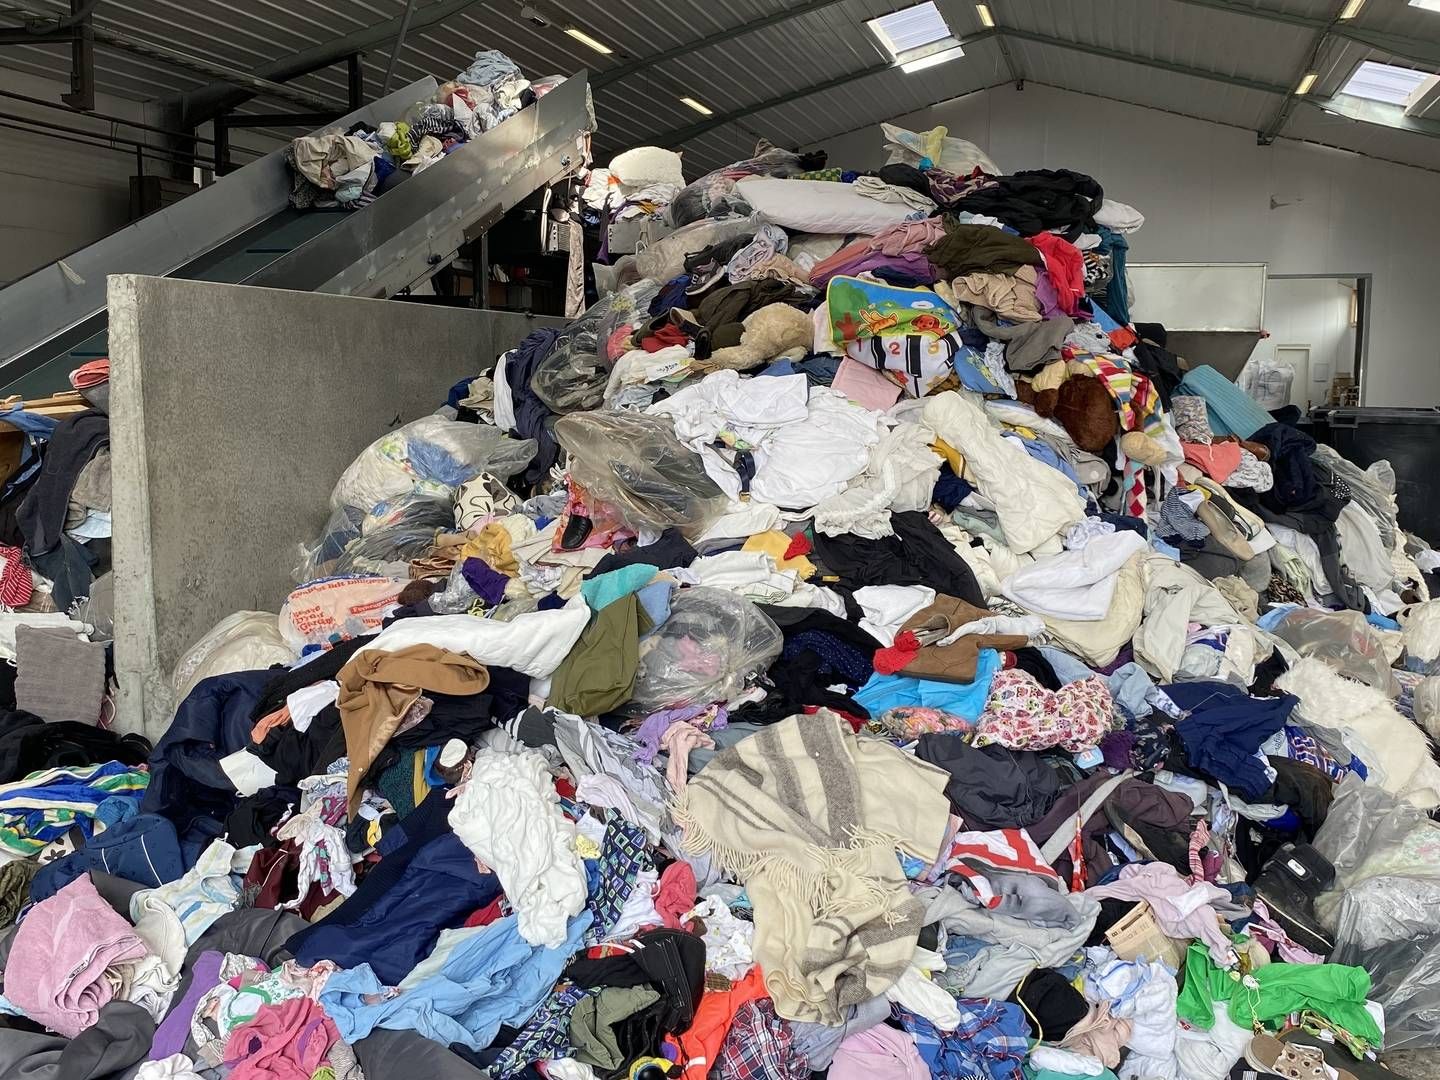 Hver person i Europa er ansvarlig for i gennemsnit mere end 15 kilo tekstilaffald hvert år. Mindre end en pct. af affaldet genbruges til nye tekstilprodukter. | Foto: Casper Nørregaard